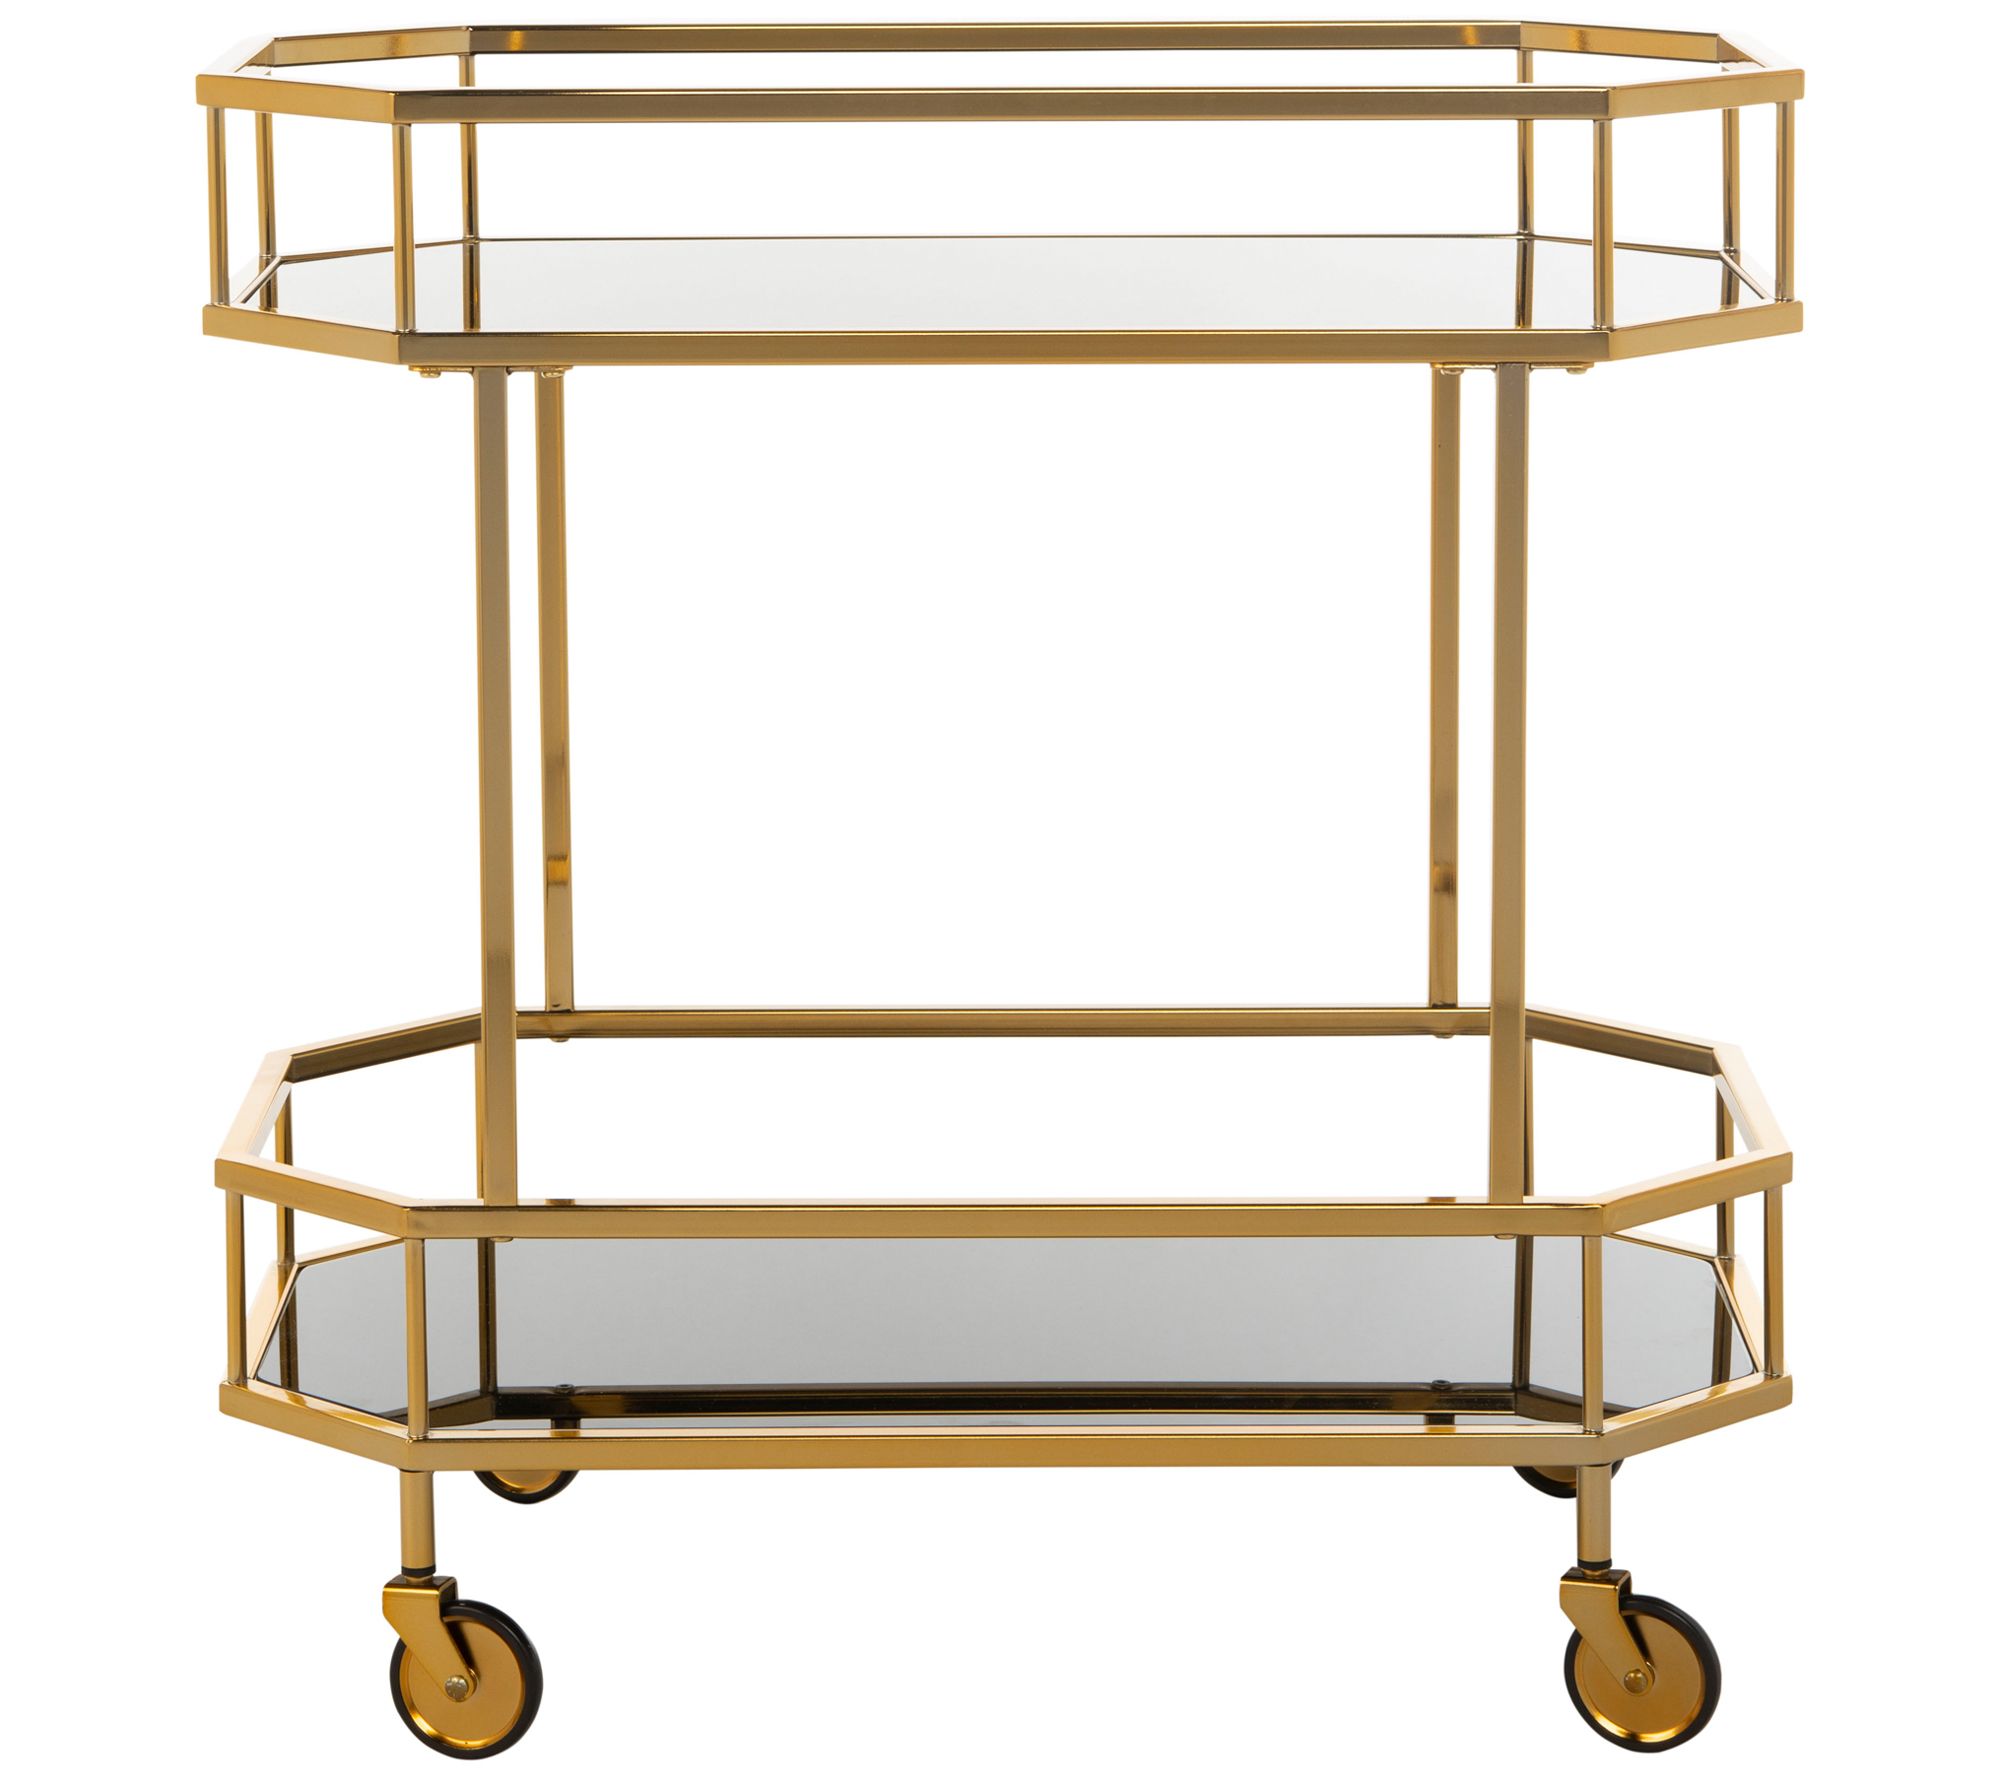 Luxe Rachel Zoe 3-Tier Brass Bar Cart with Glass Shelves - QVC.com